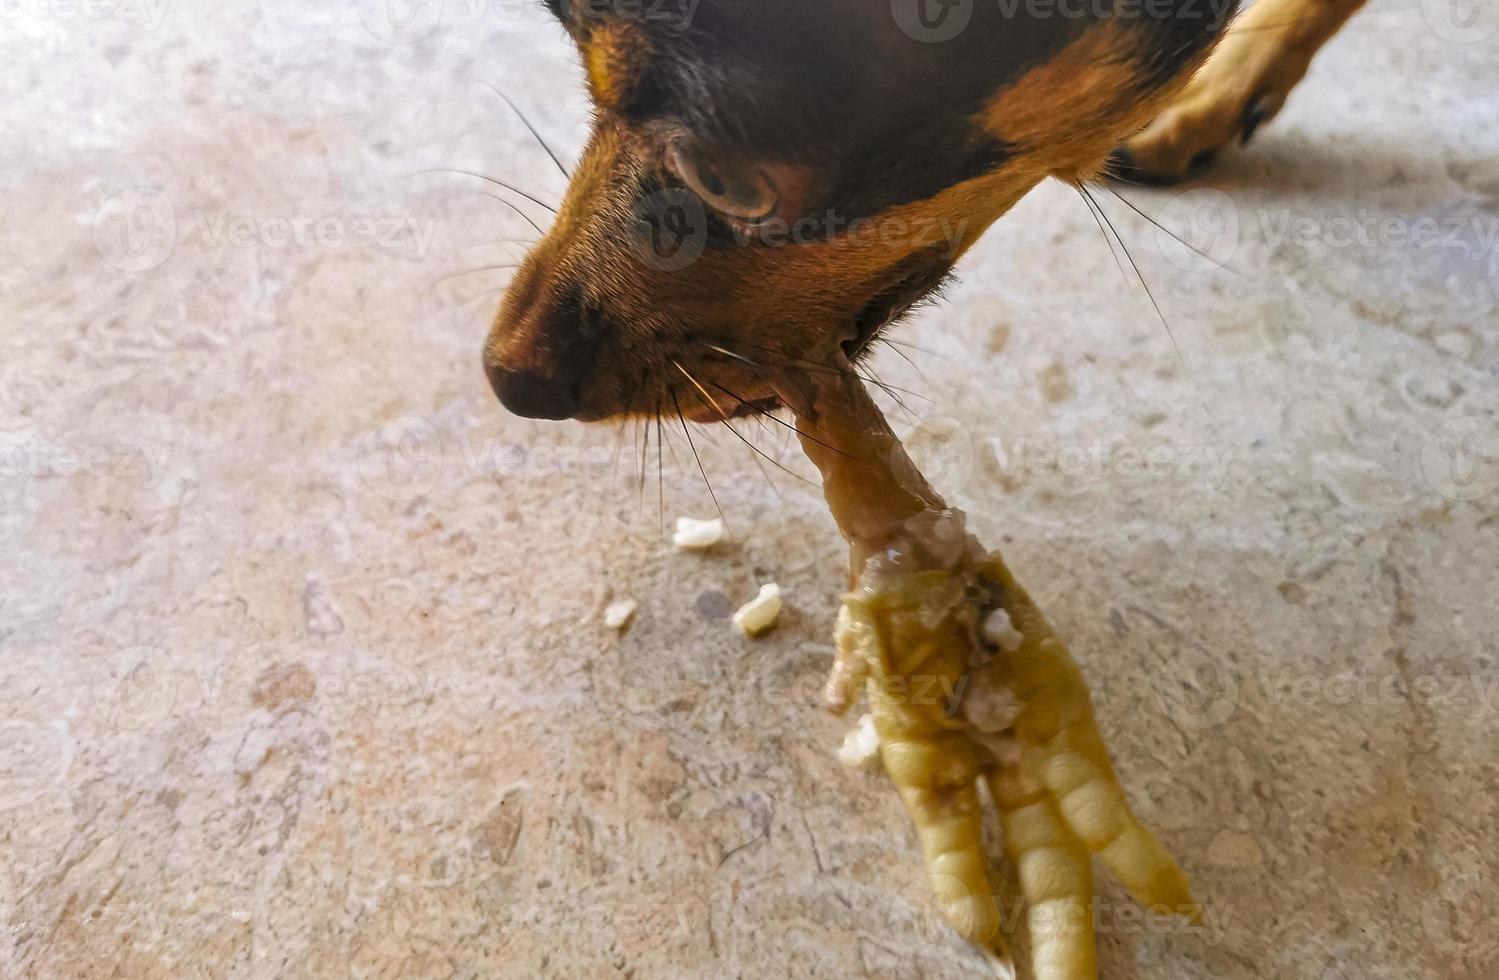 perro come y muerde muslo de pollo en mexico. foto